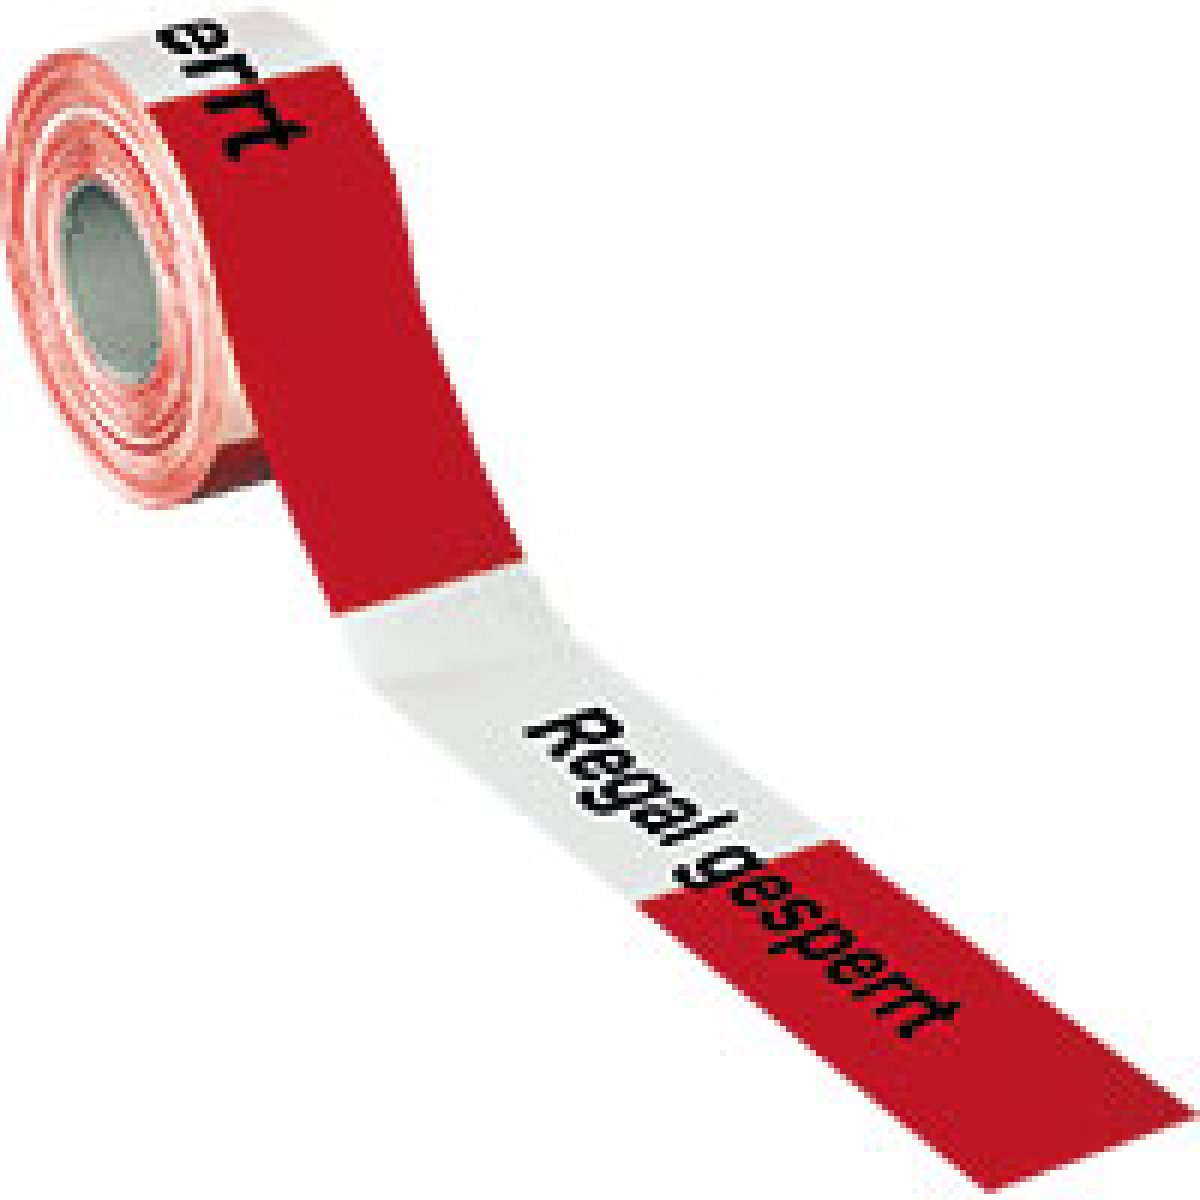 Absperrband Regal gesperrt, rot/weiß geblockt, Polyethylen, 80mm, 500m/Rolle,  500 m